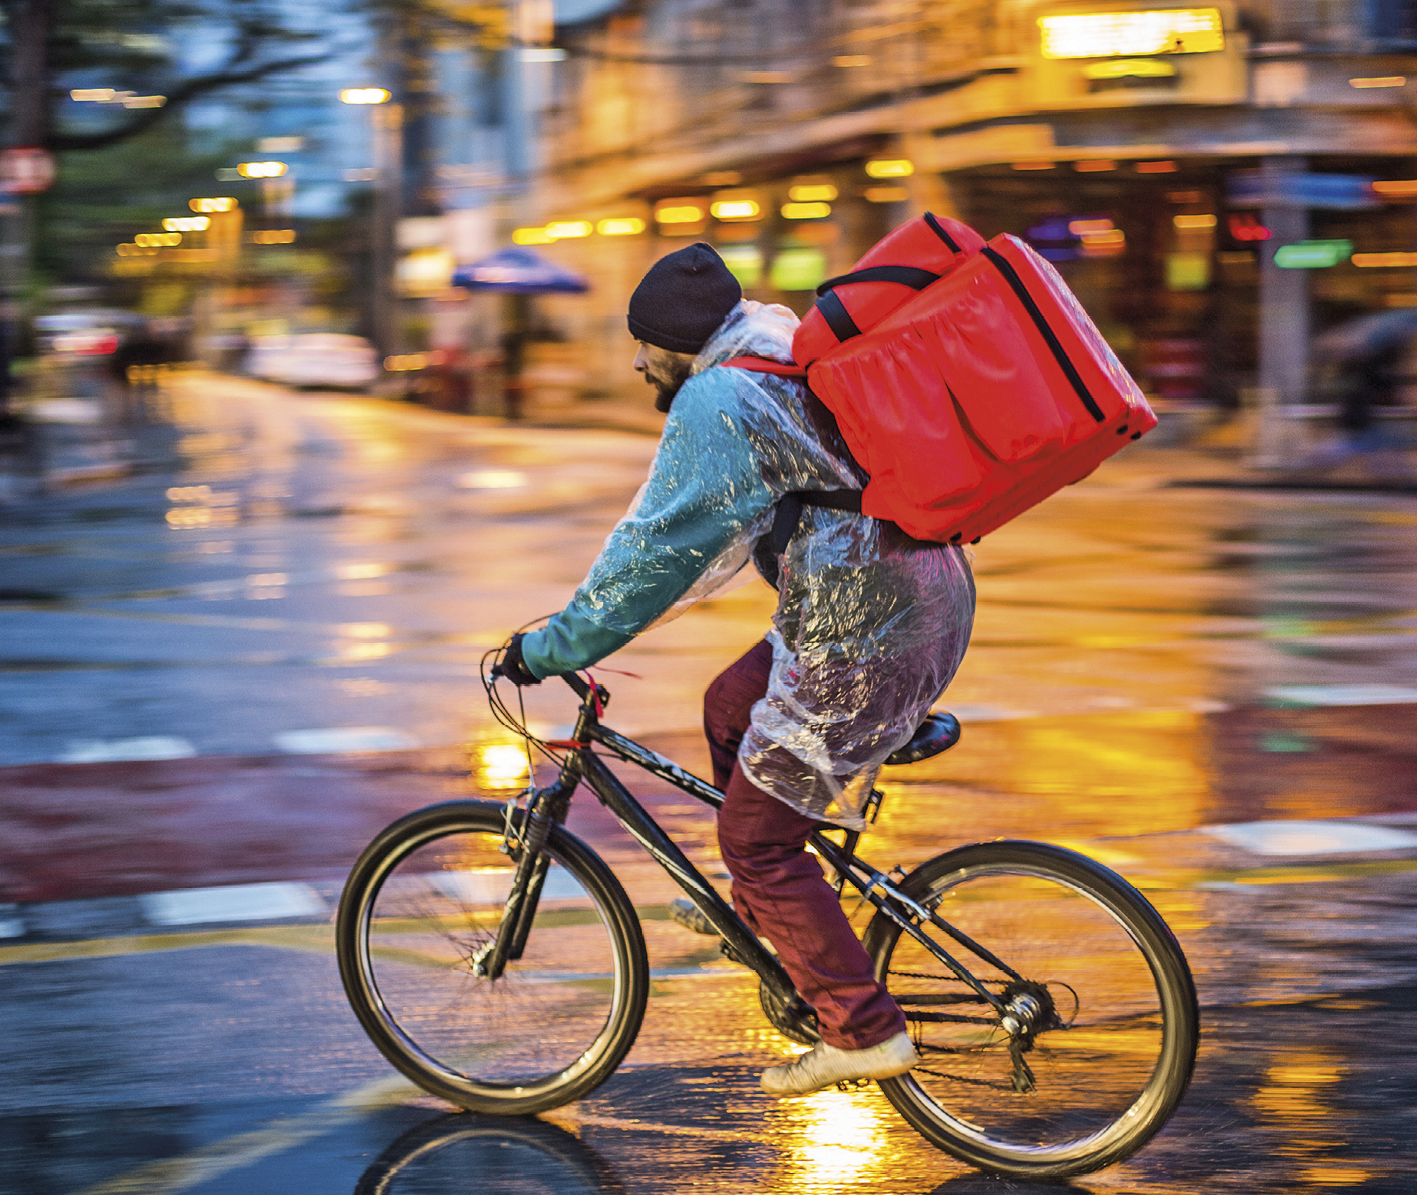 Fotografia. Entregador de comida em bicicleta. Ele carrega uma mochila grande e vermelha às costas que contém um isopor. O entregador usa touca e capa de chuva. O asfalto está molhado. Ao fundo as luzes da rua desfocadas.